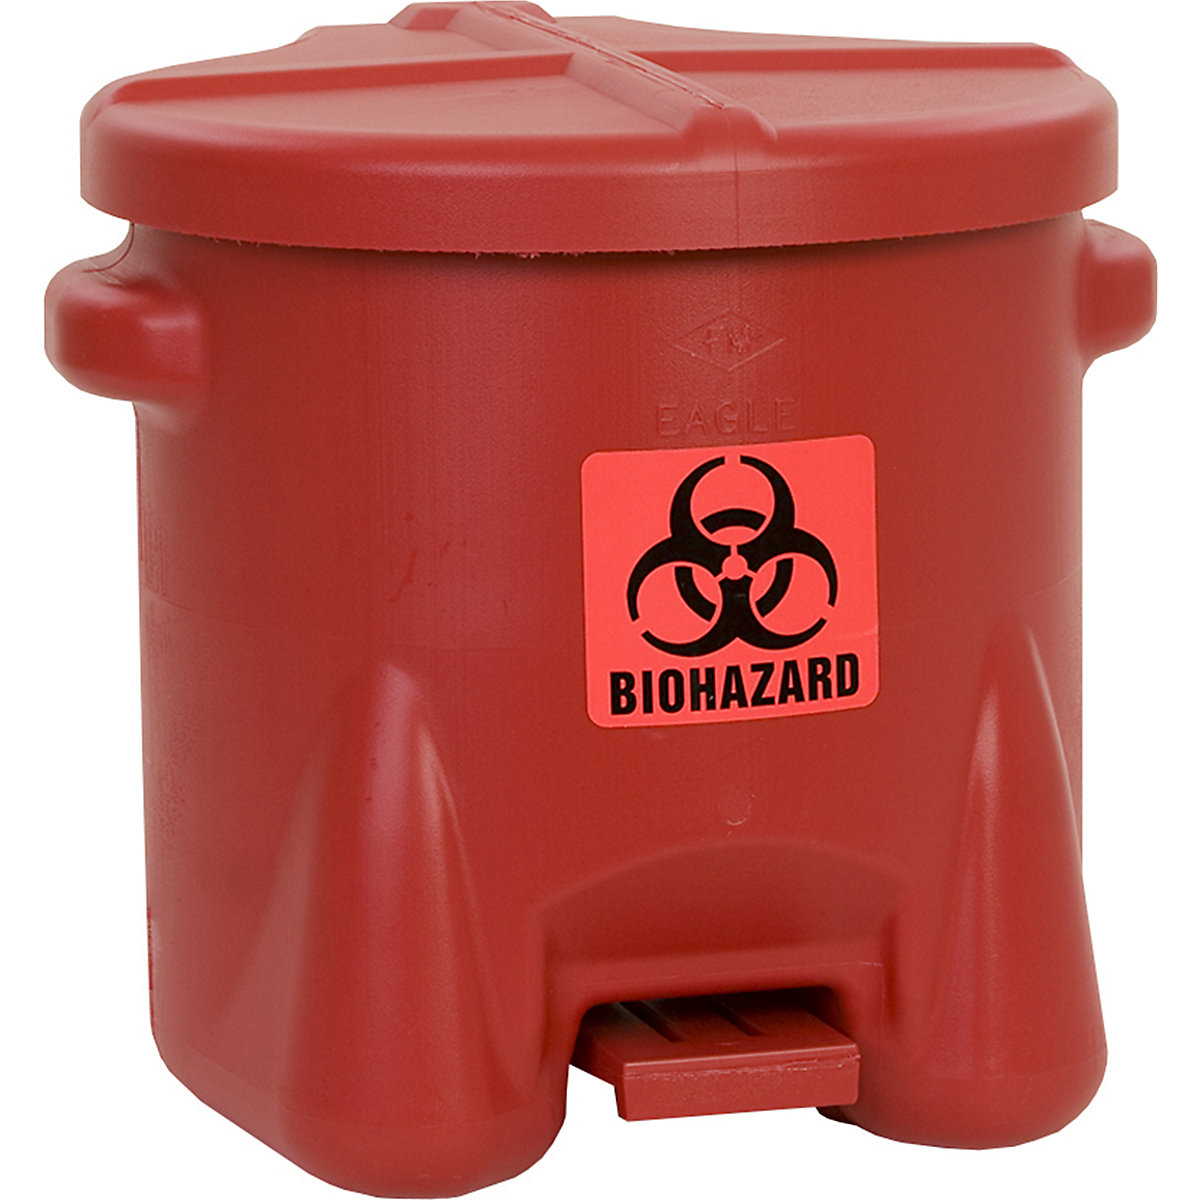 Bezpečnostní nádoba z PE na biologicky nebezpečný odpad – Justrite